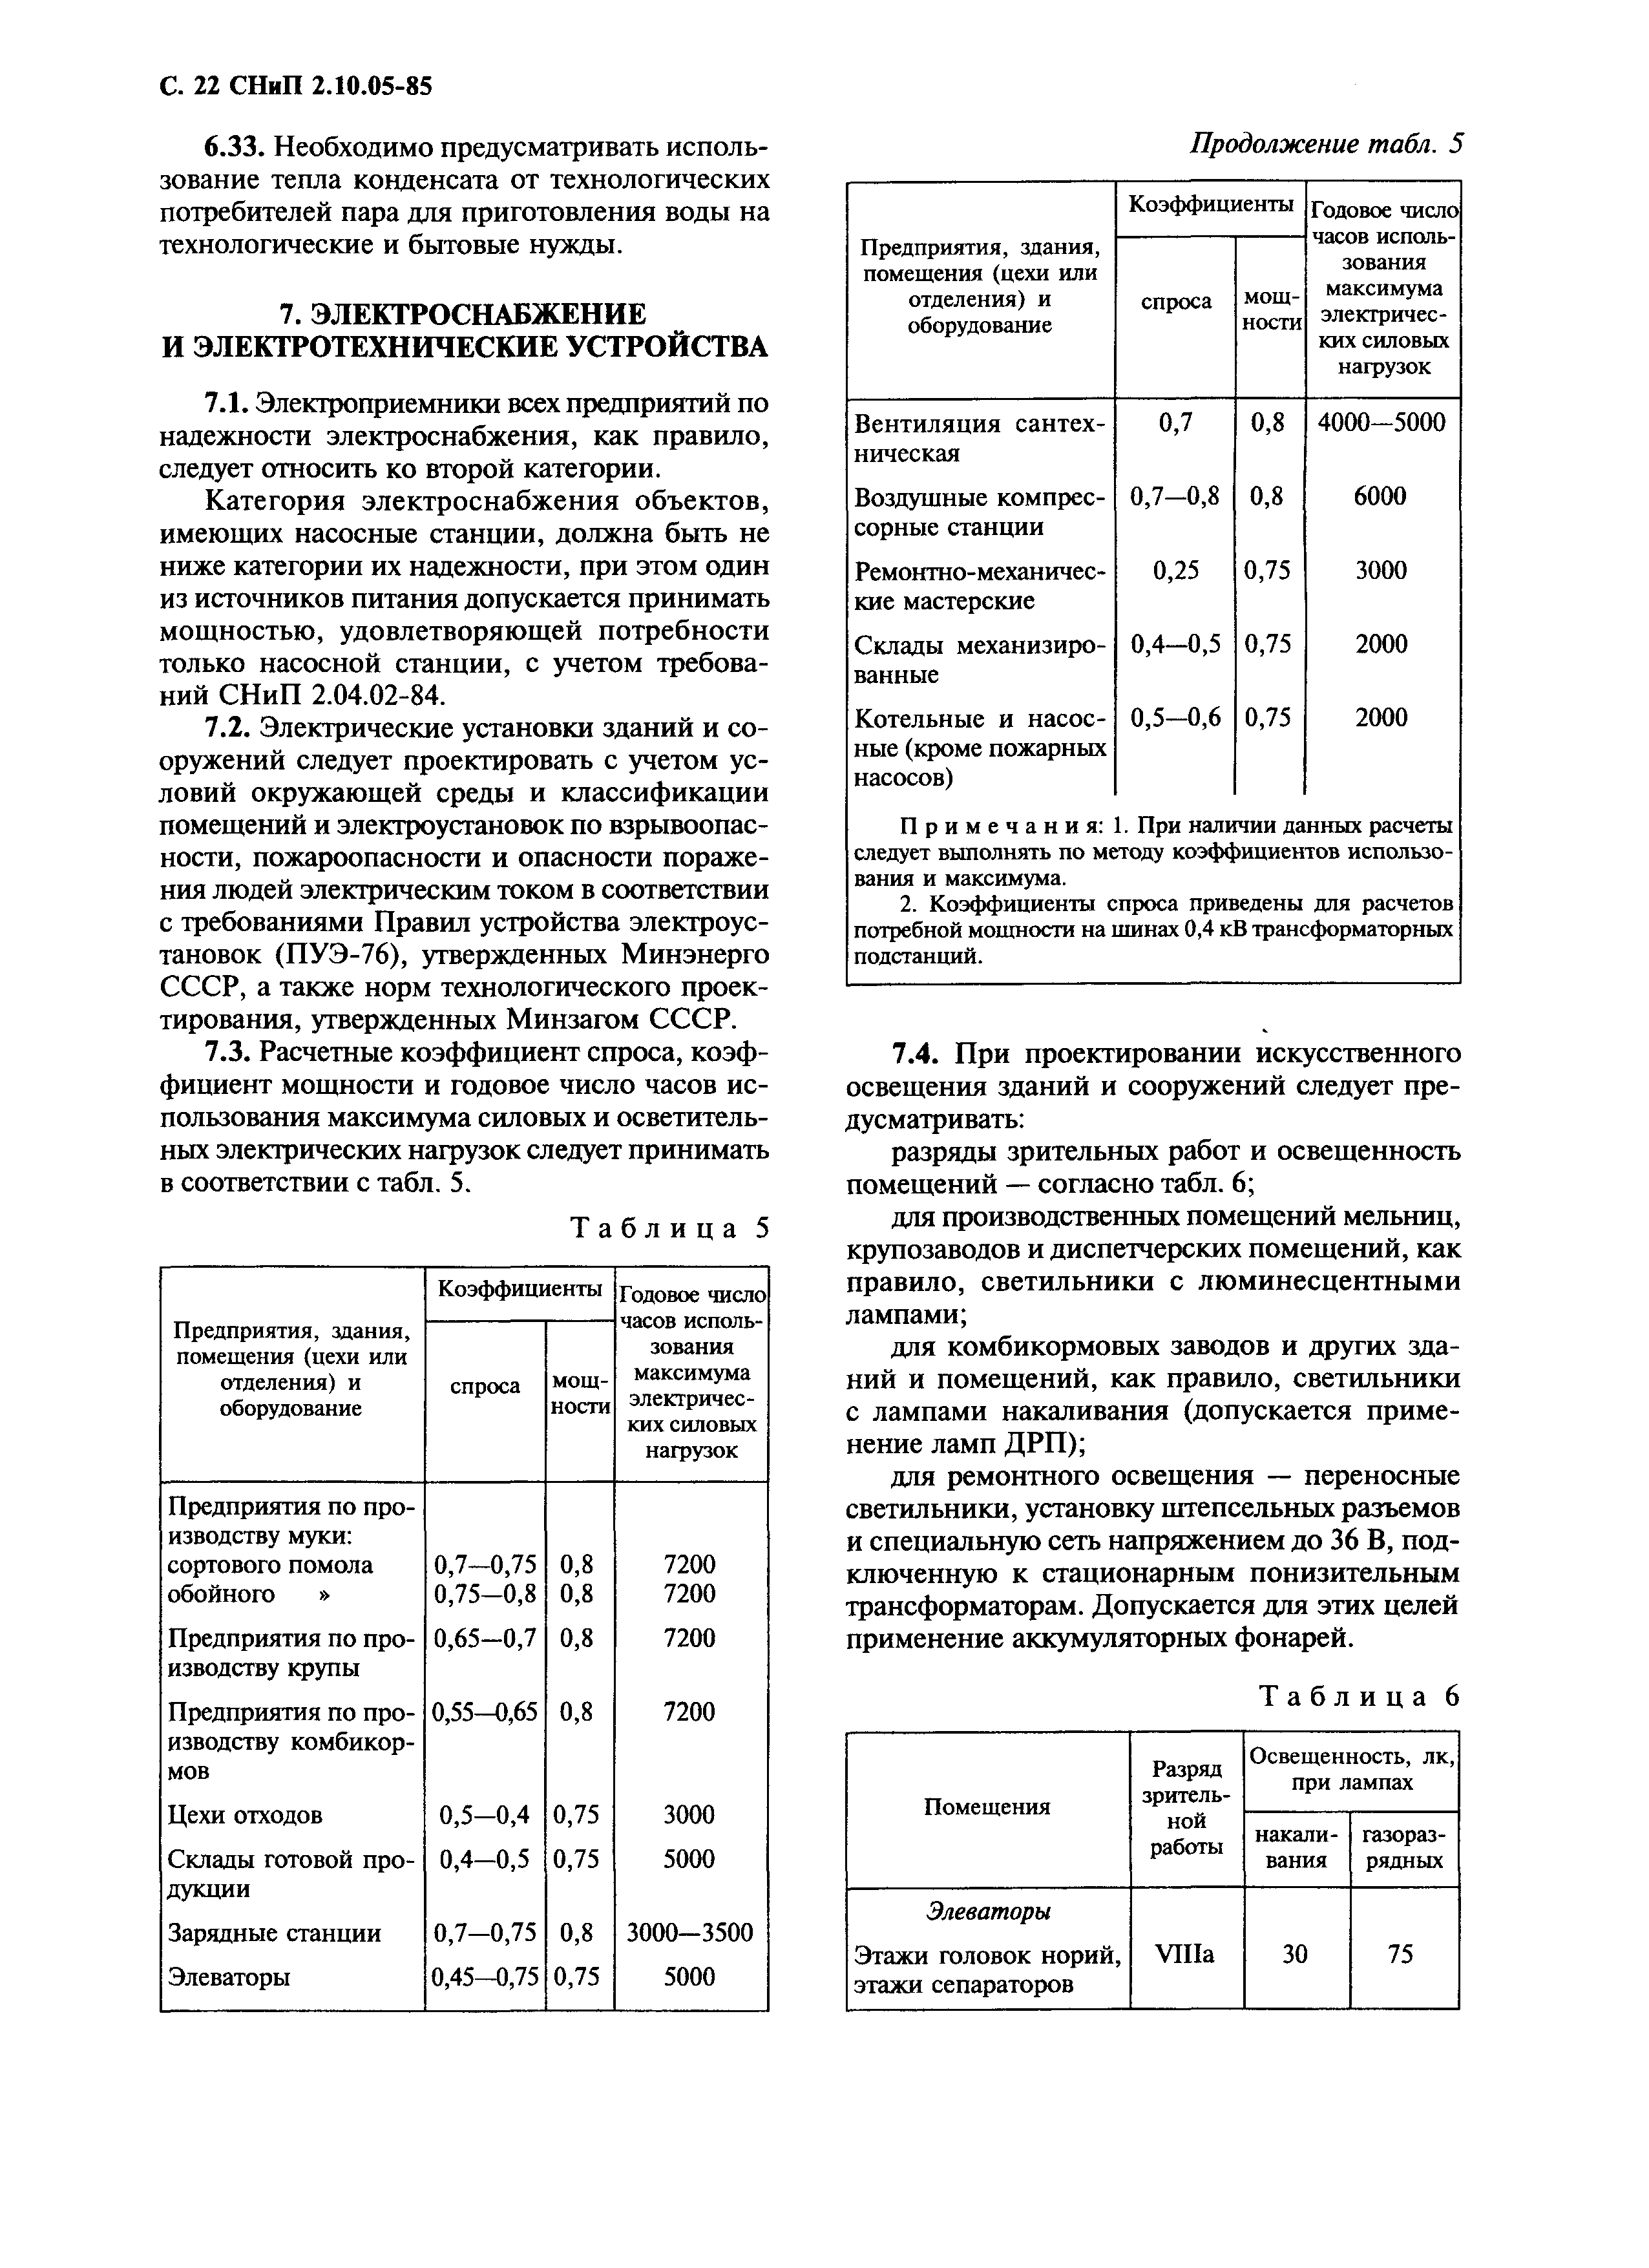 СНиП 2.10.05-85